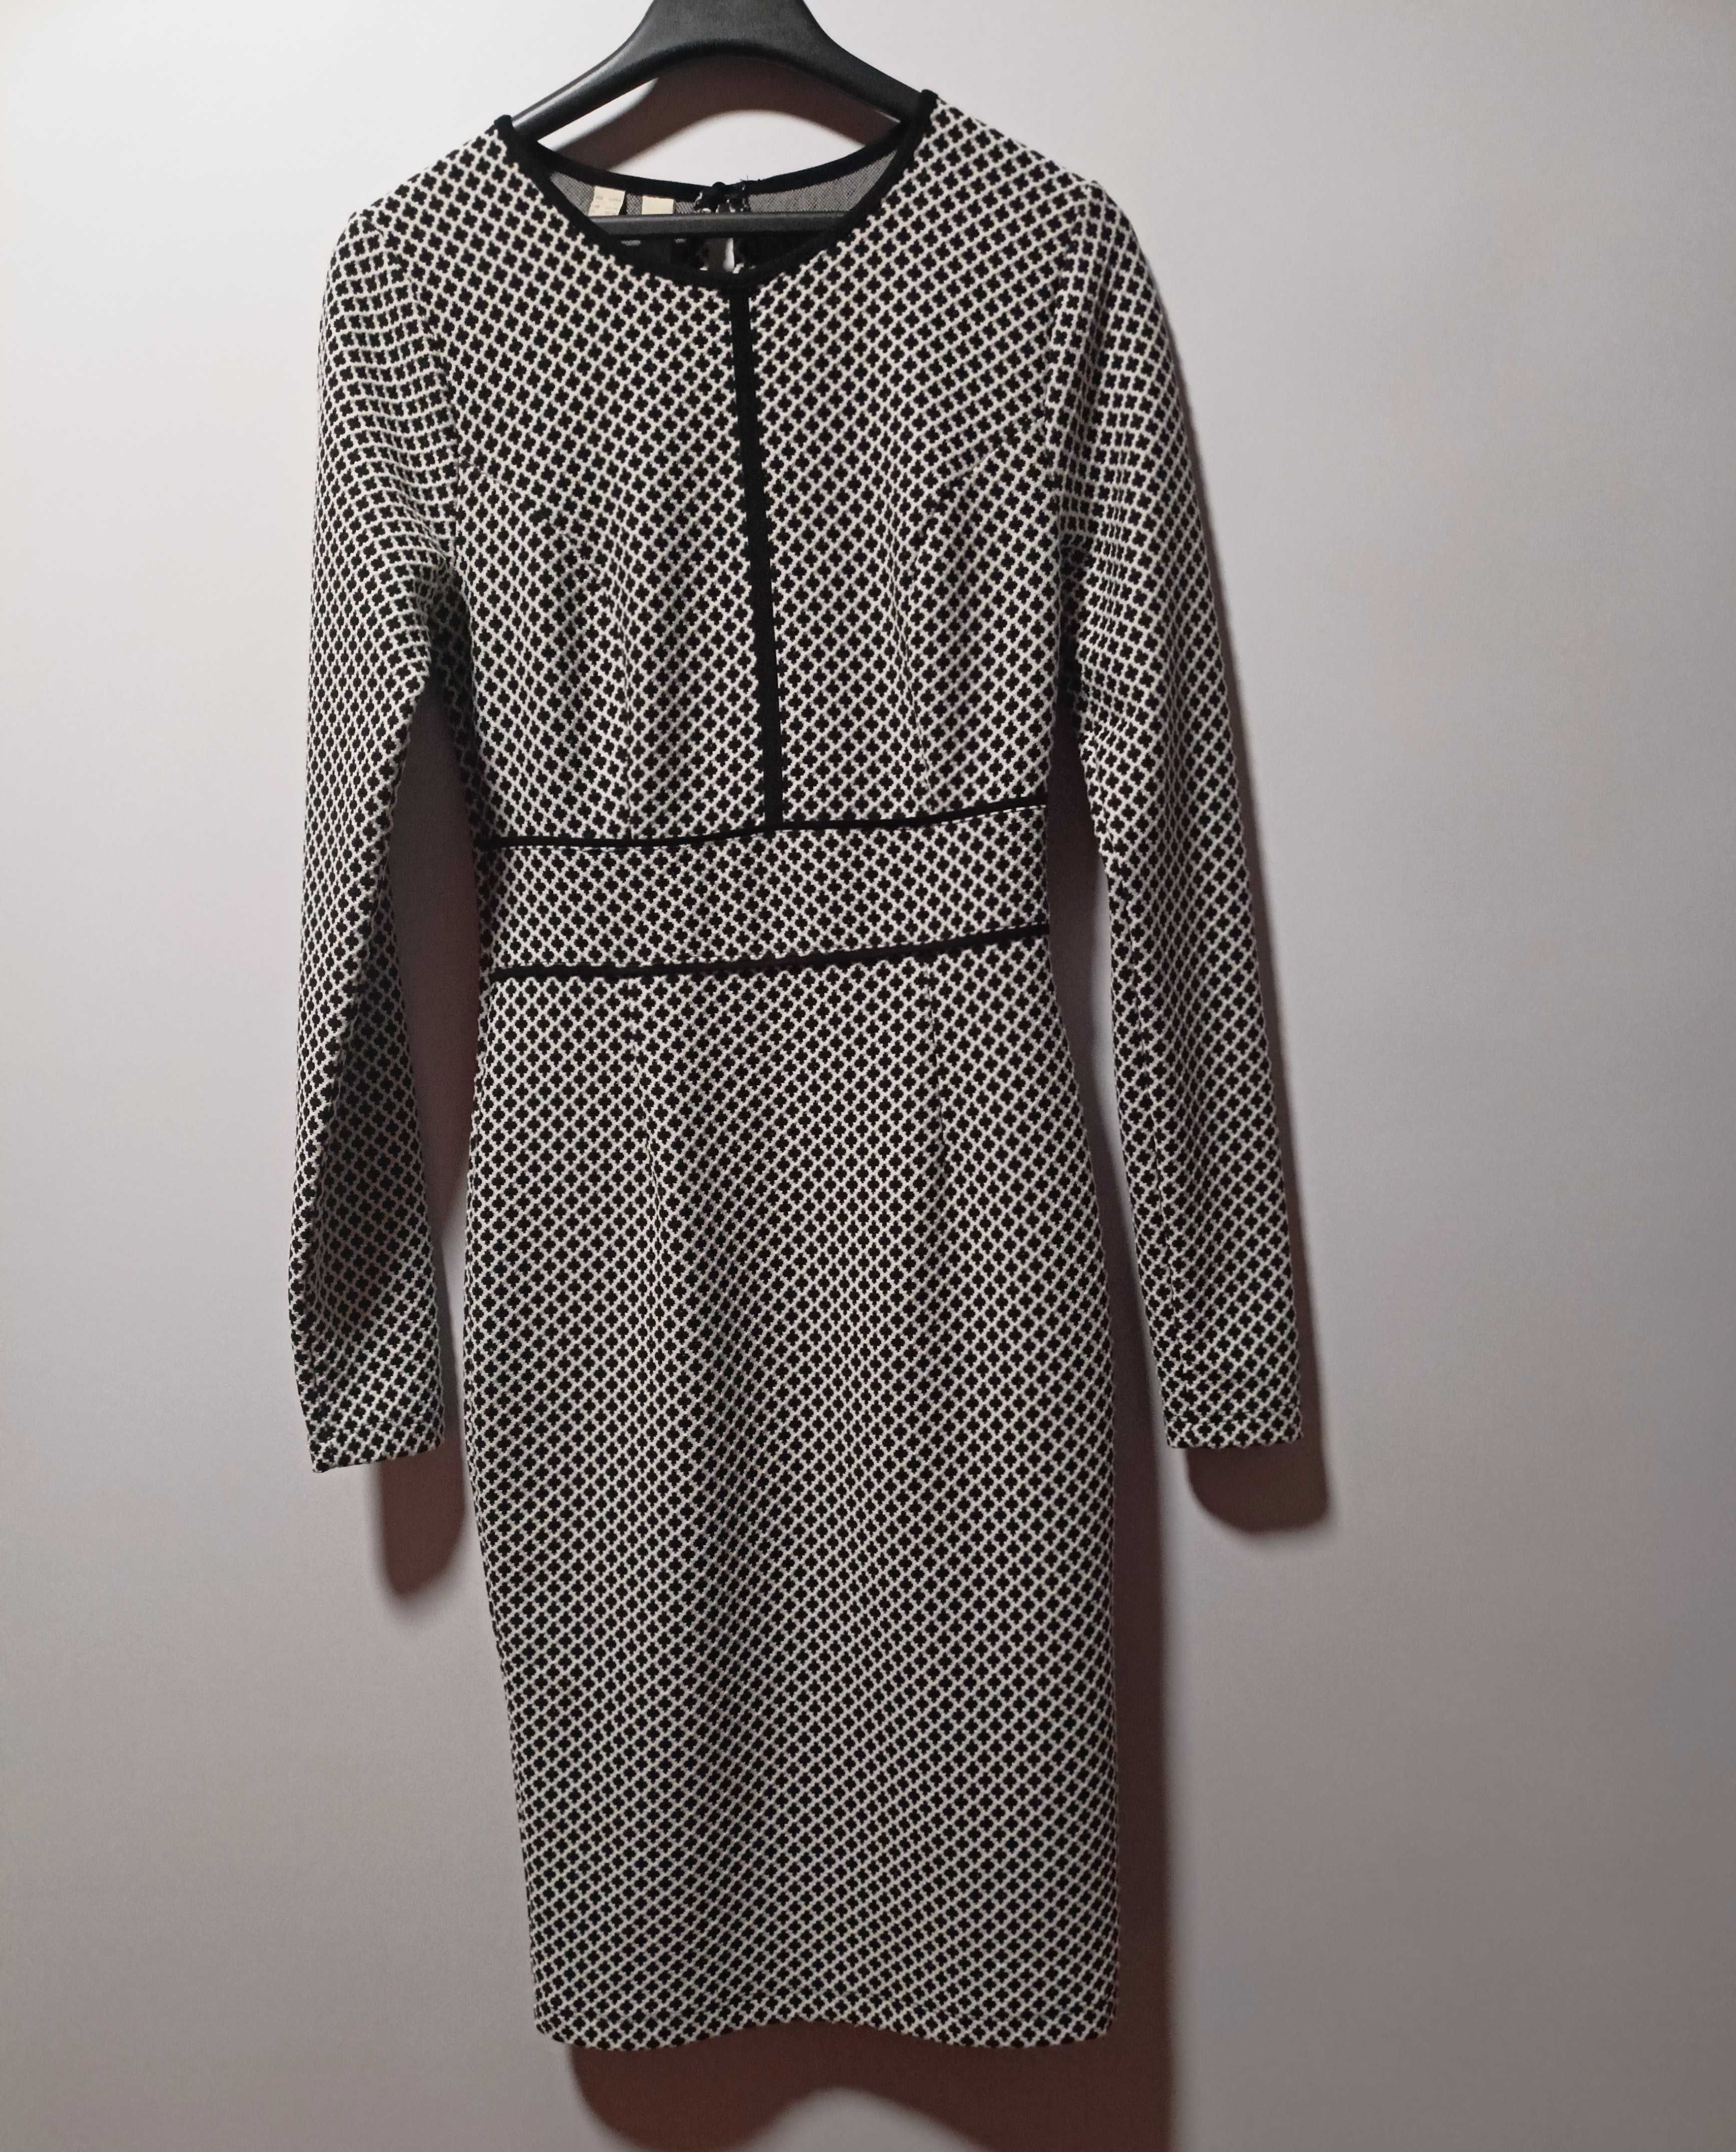 Lekka dzianinowa ołówkowa sukienka XS/S Bodyflirt Boutique